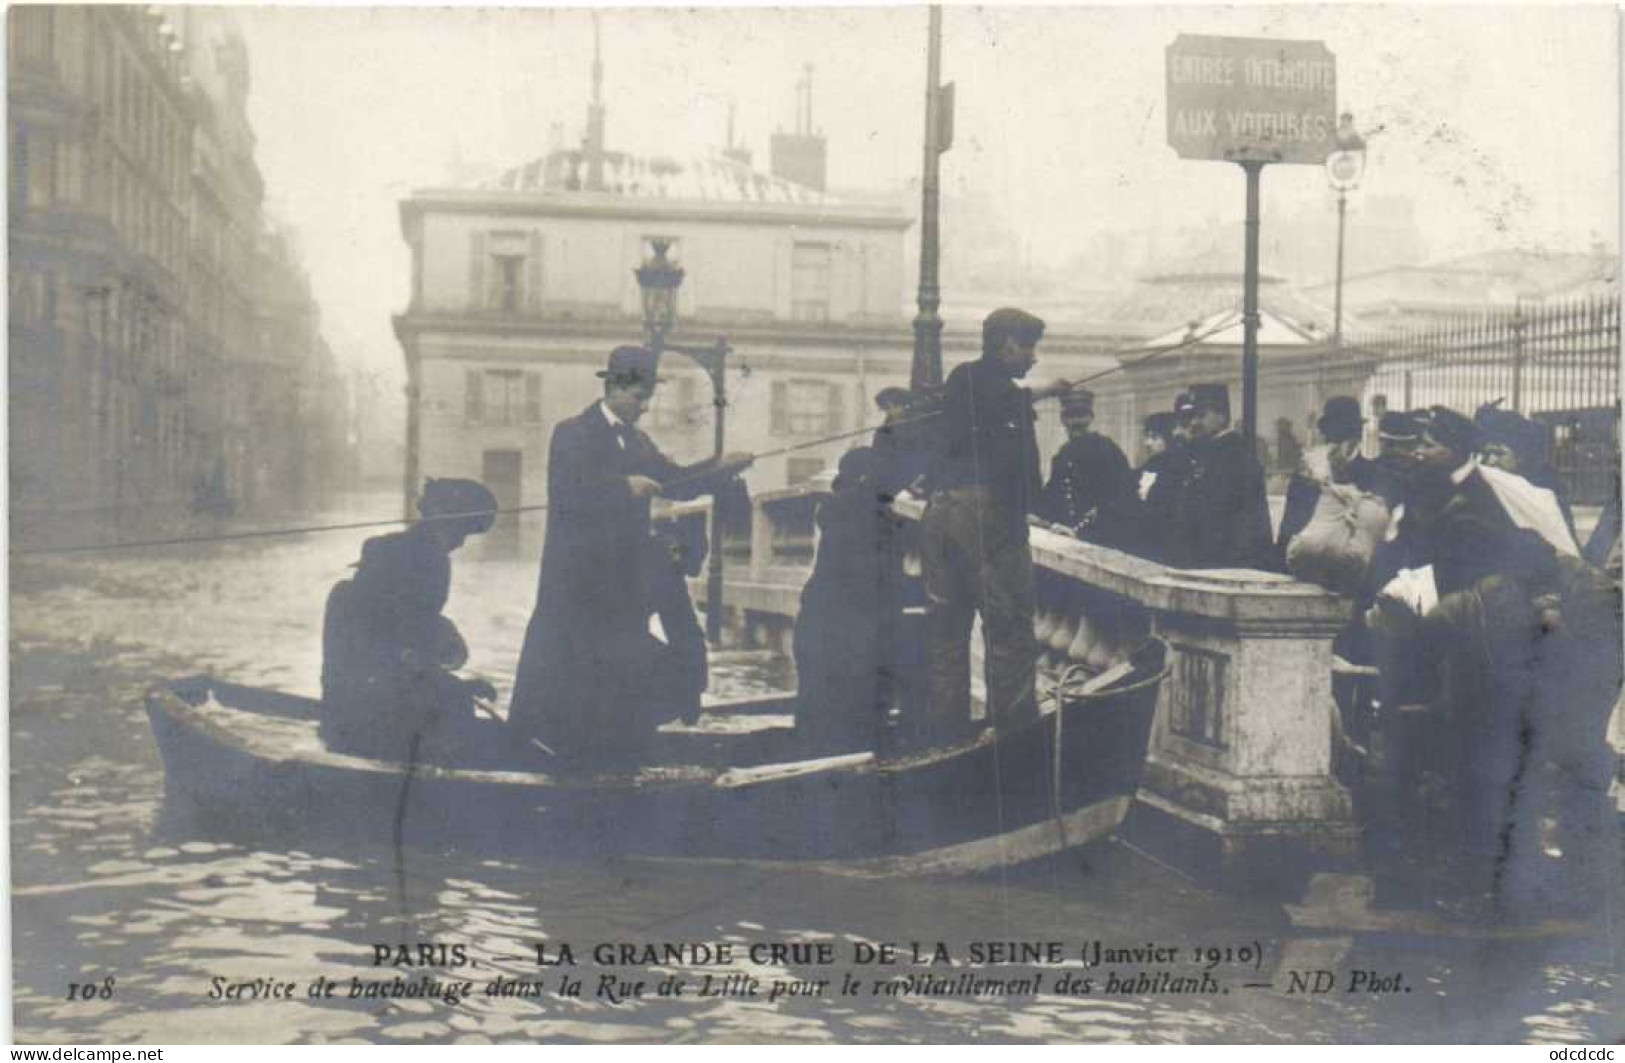 DESTOCKAGE Avant fermeture boutique T BON LOT 100 CPA  INONDATIONS DE PARIS 1910 Touies Animées  (toutes scannées )